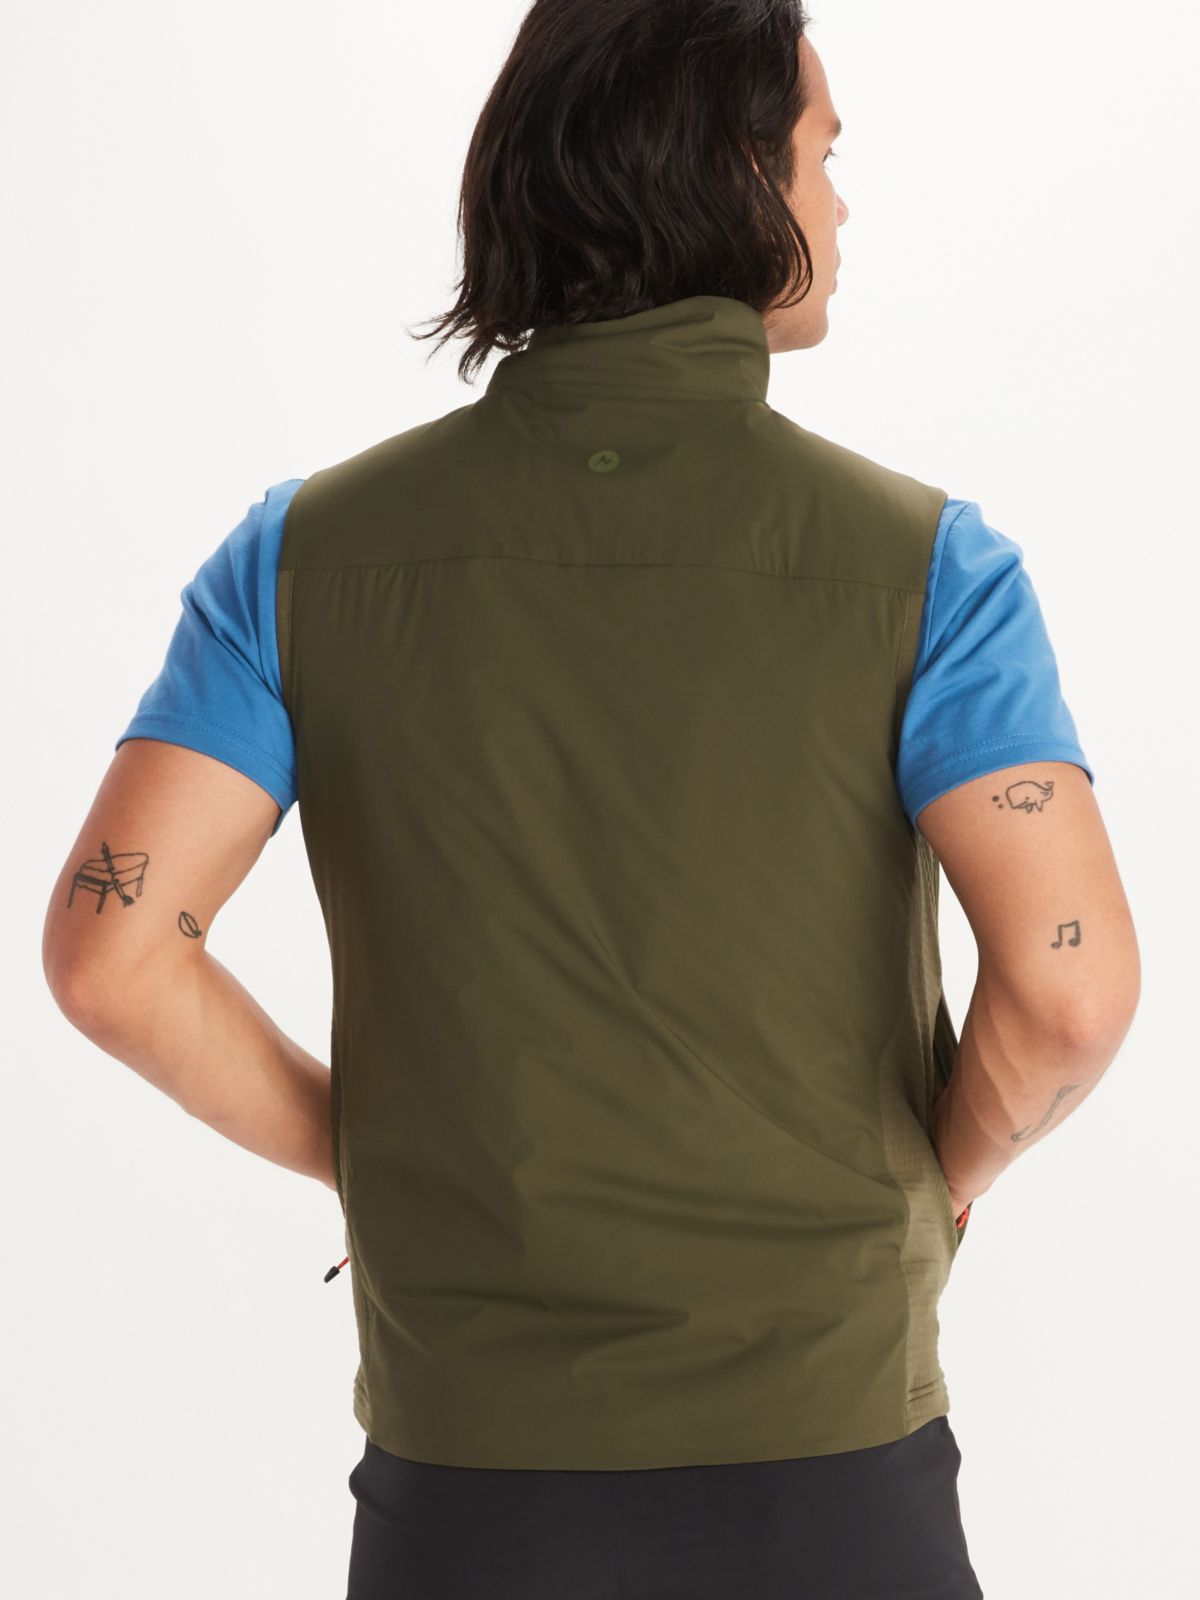 Men's Novus LT Hybrid Vest